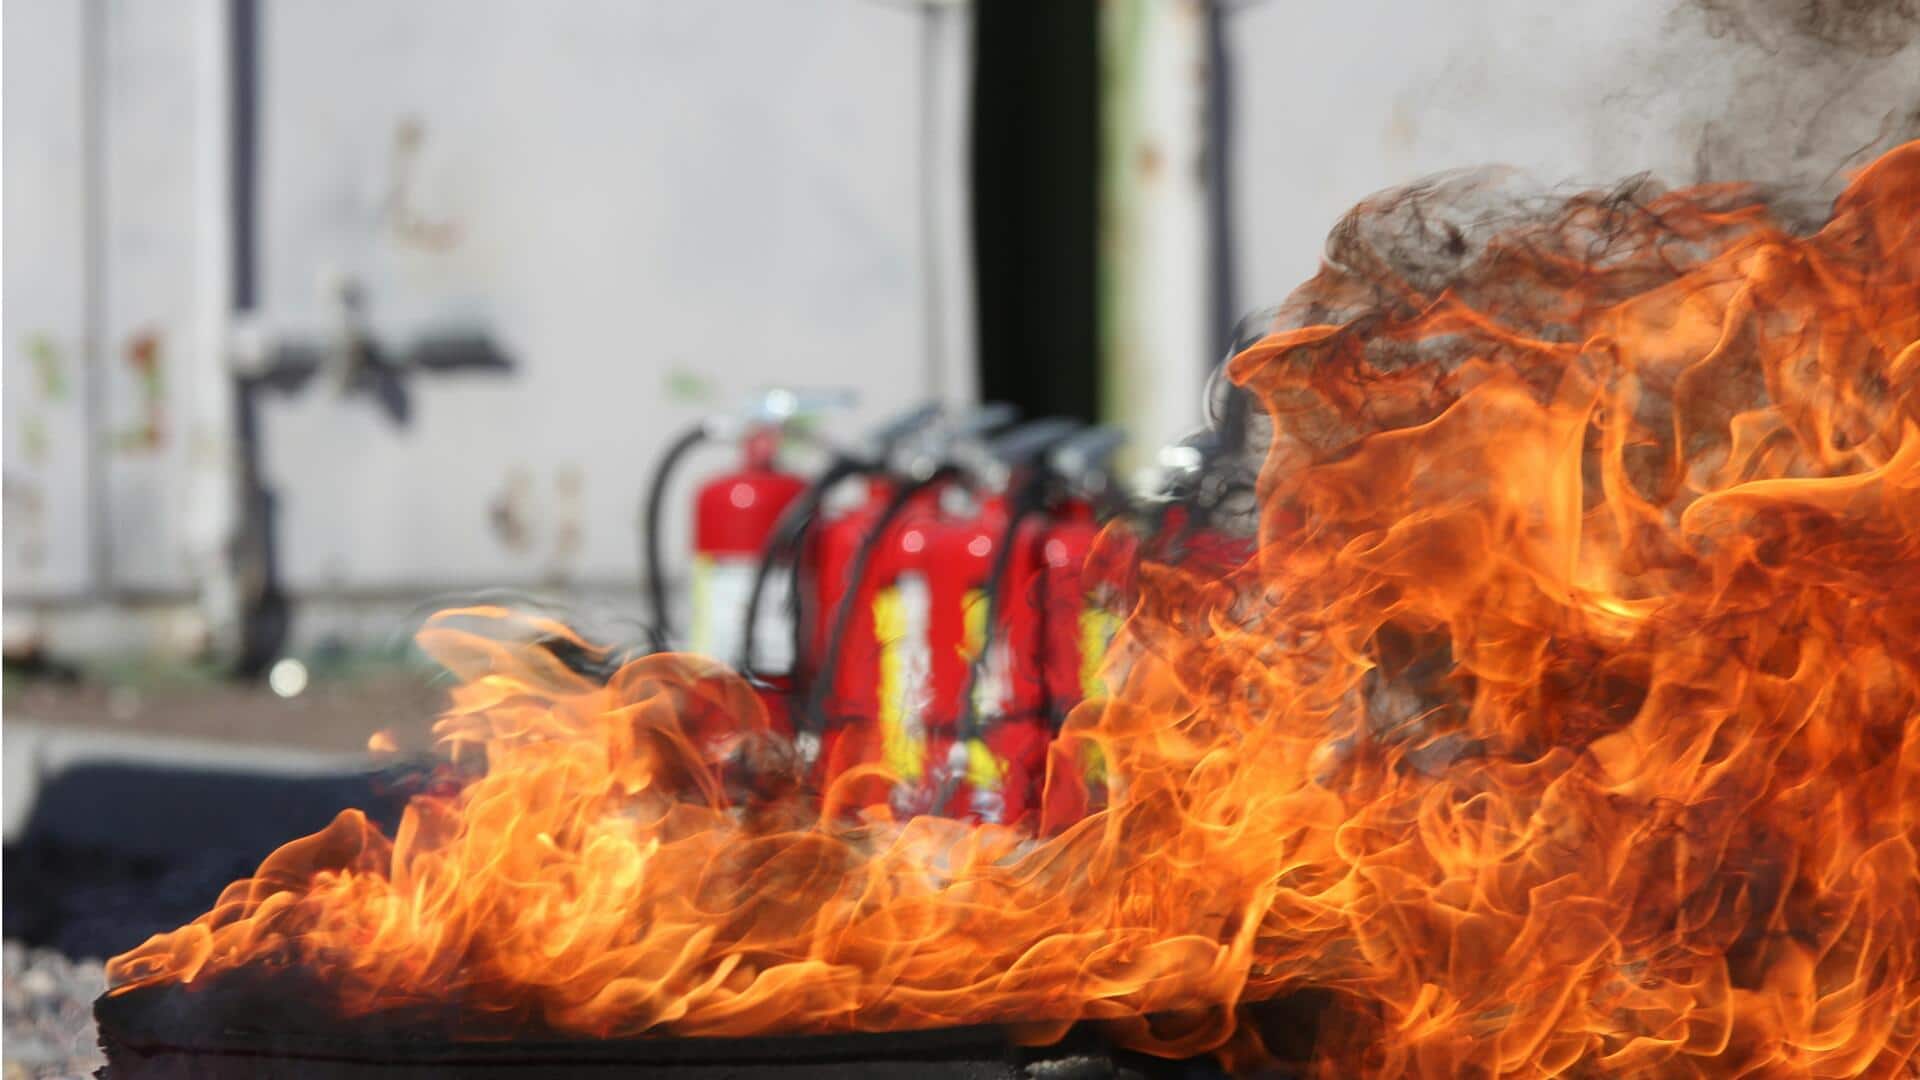 लखनऊ: गोदाम में अग्निशमन यंत्र में गैस भरते समय भीषण धमाका, 1 व्यक्ति की मौत